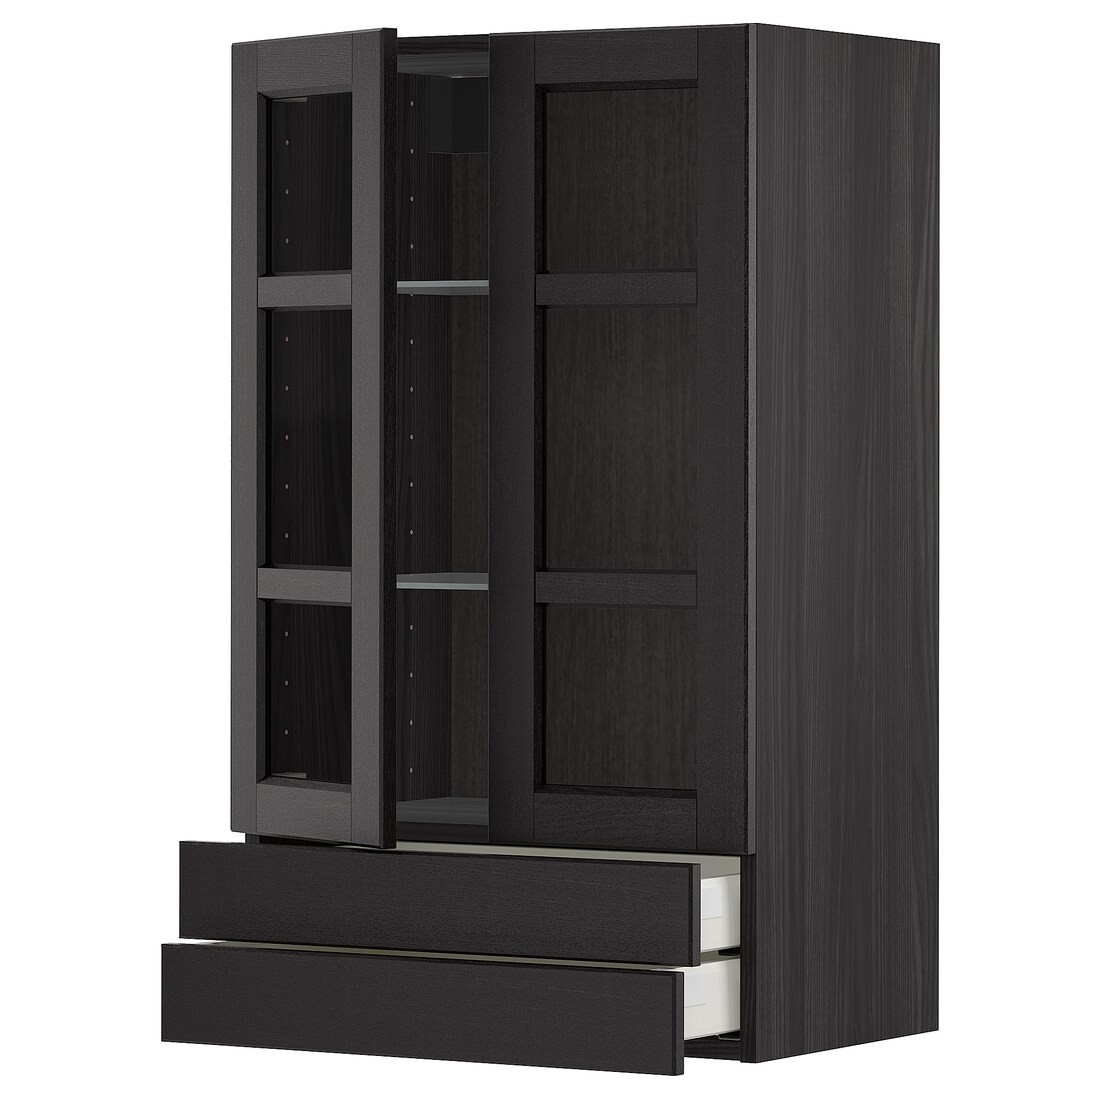 IKEA METOD МЕТОД / MAXIMERA МАКСИМЕРА Навесной шкаф / 2 стеклянные дверцы / 2 ящика, черный / Lerhyttan черная морилка, 60x100 см 29456650 294.566.50